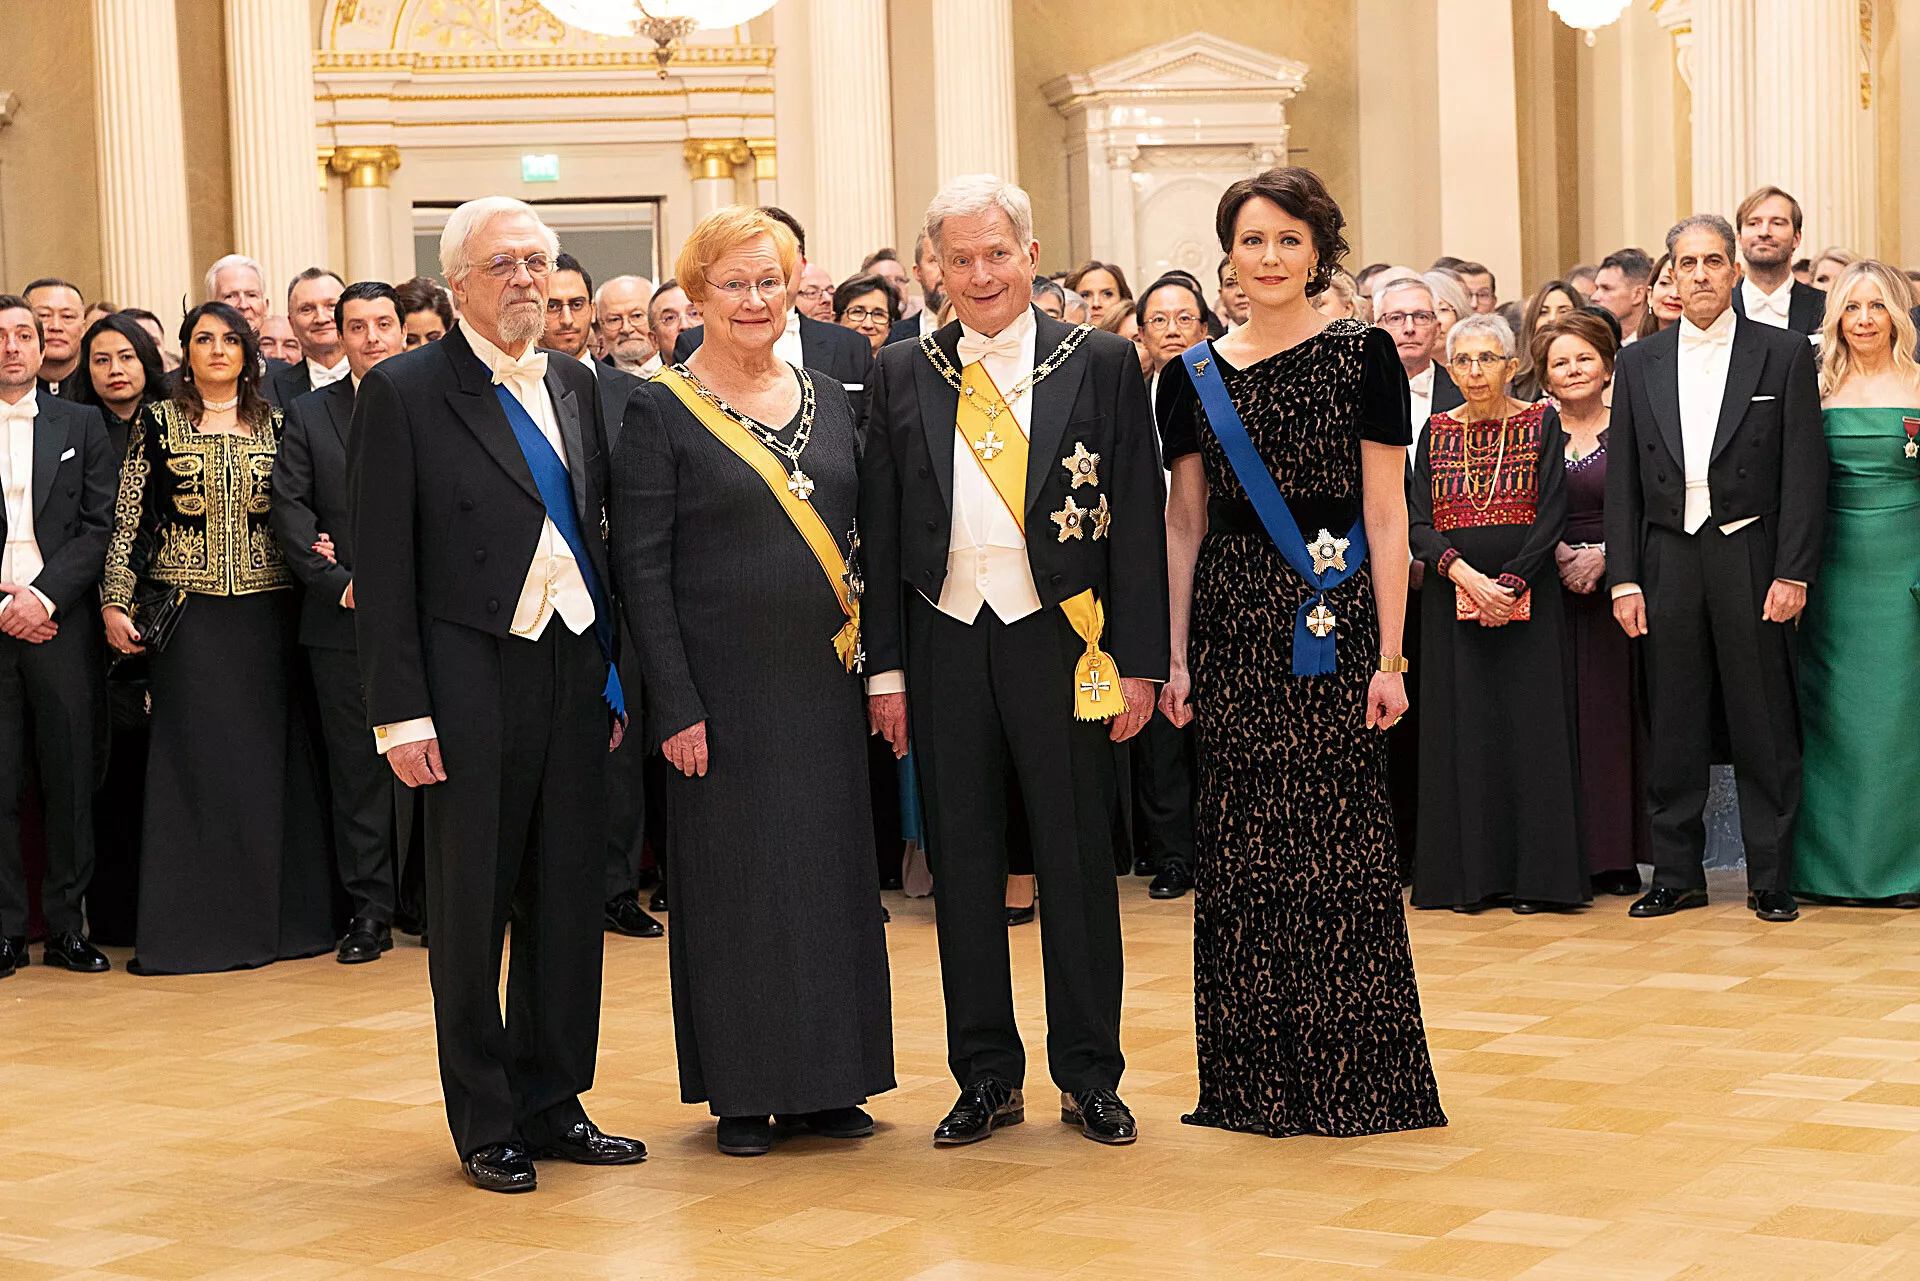 Tohtori Pentti Arajärvi ja presidentti Tarja Halonen saapuivat presidentti Sauli Niinistön ja tohtori Jenni Haukion viimeistä kertaa isännöimille Linnan juhlille. Ensi vuonna vieraat ottaa vastaan uusi presidenttipari.